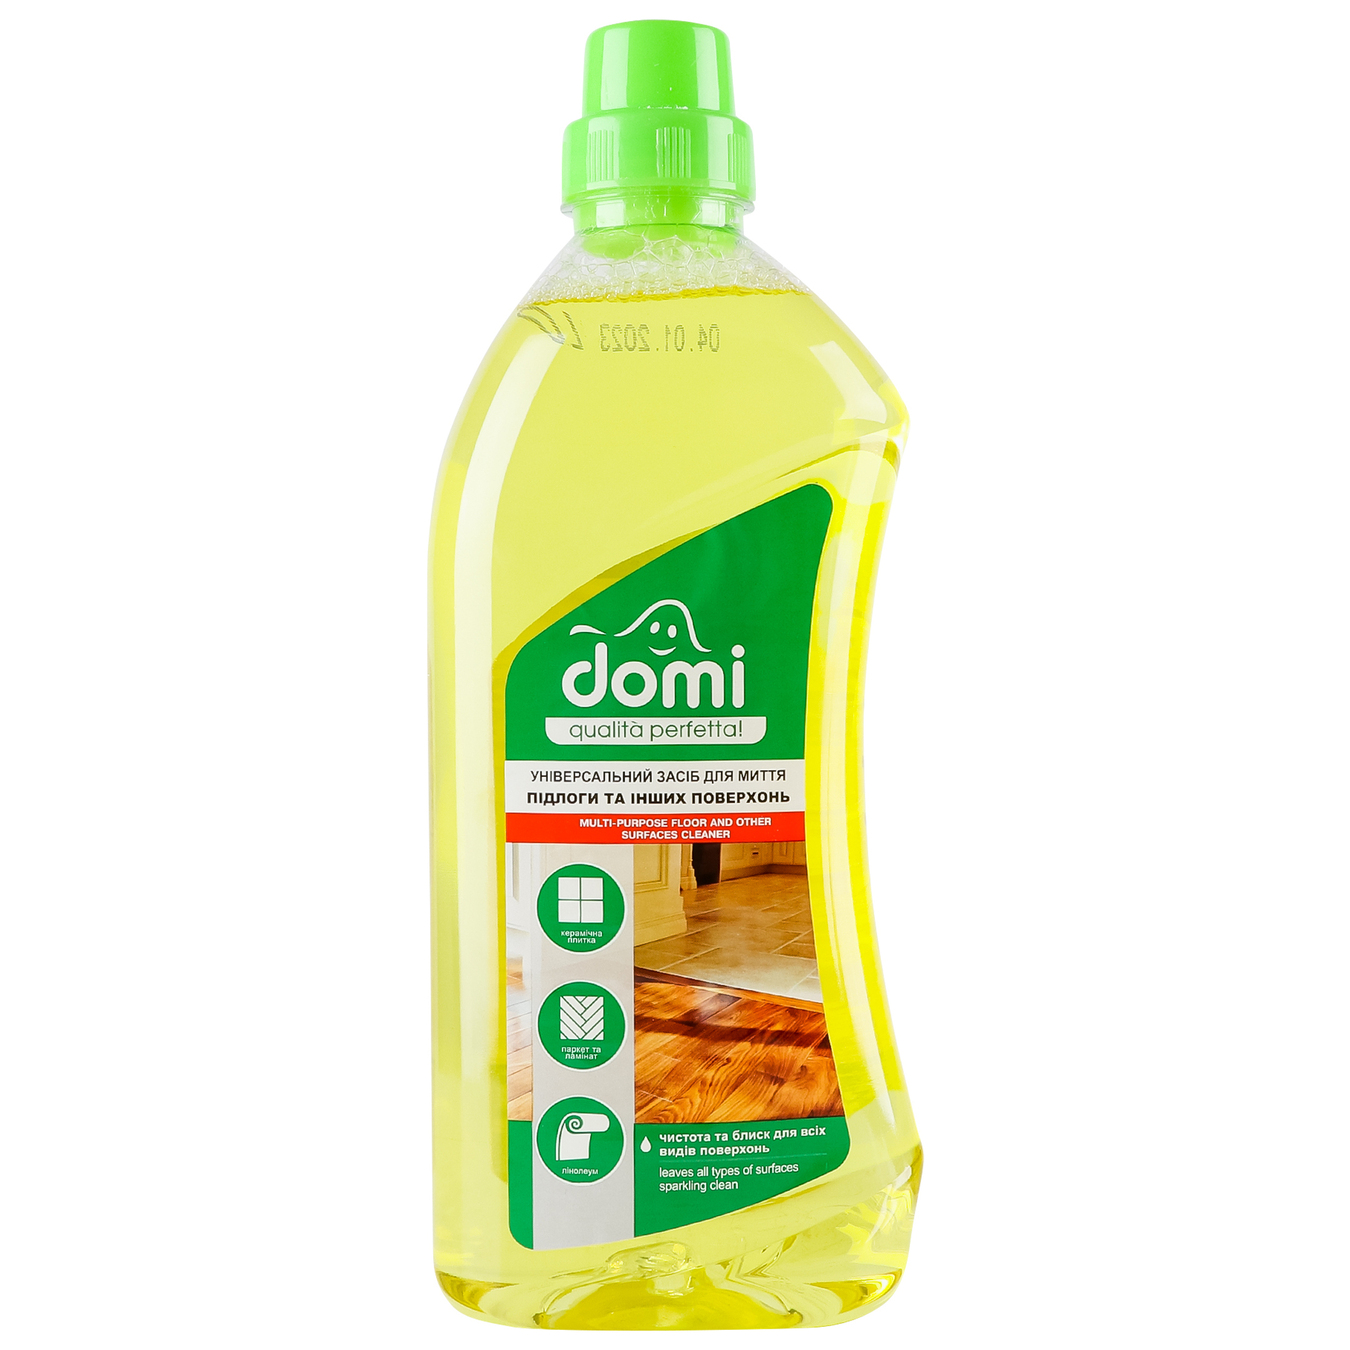 Domi universal floor cleaner 1l